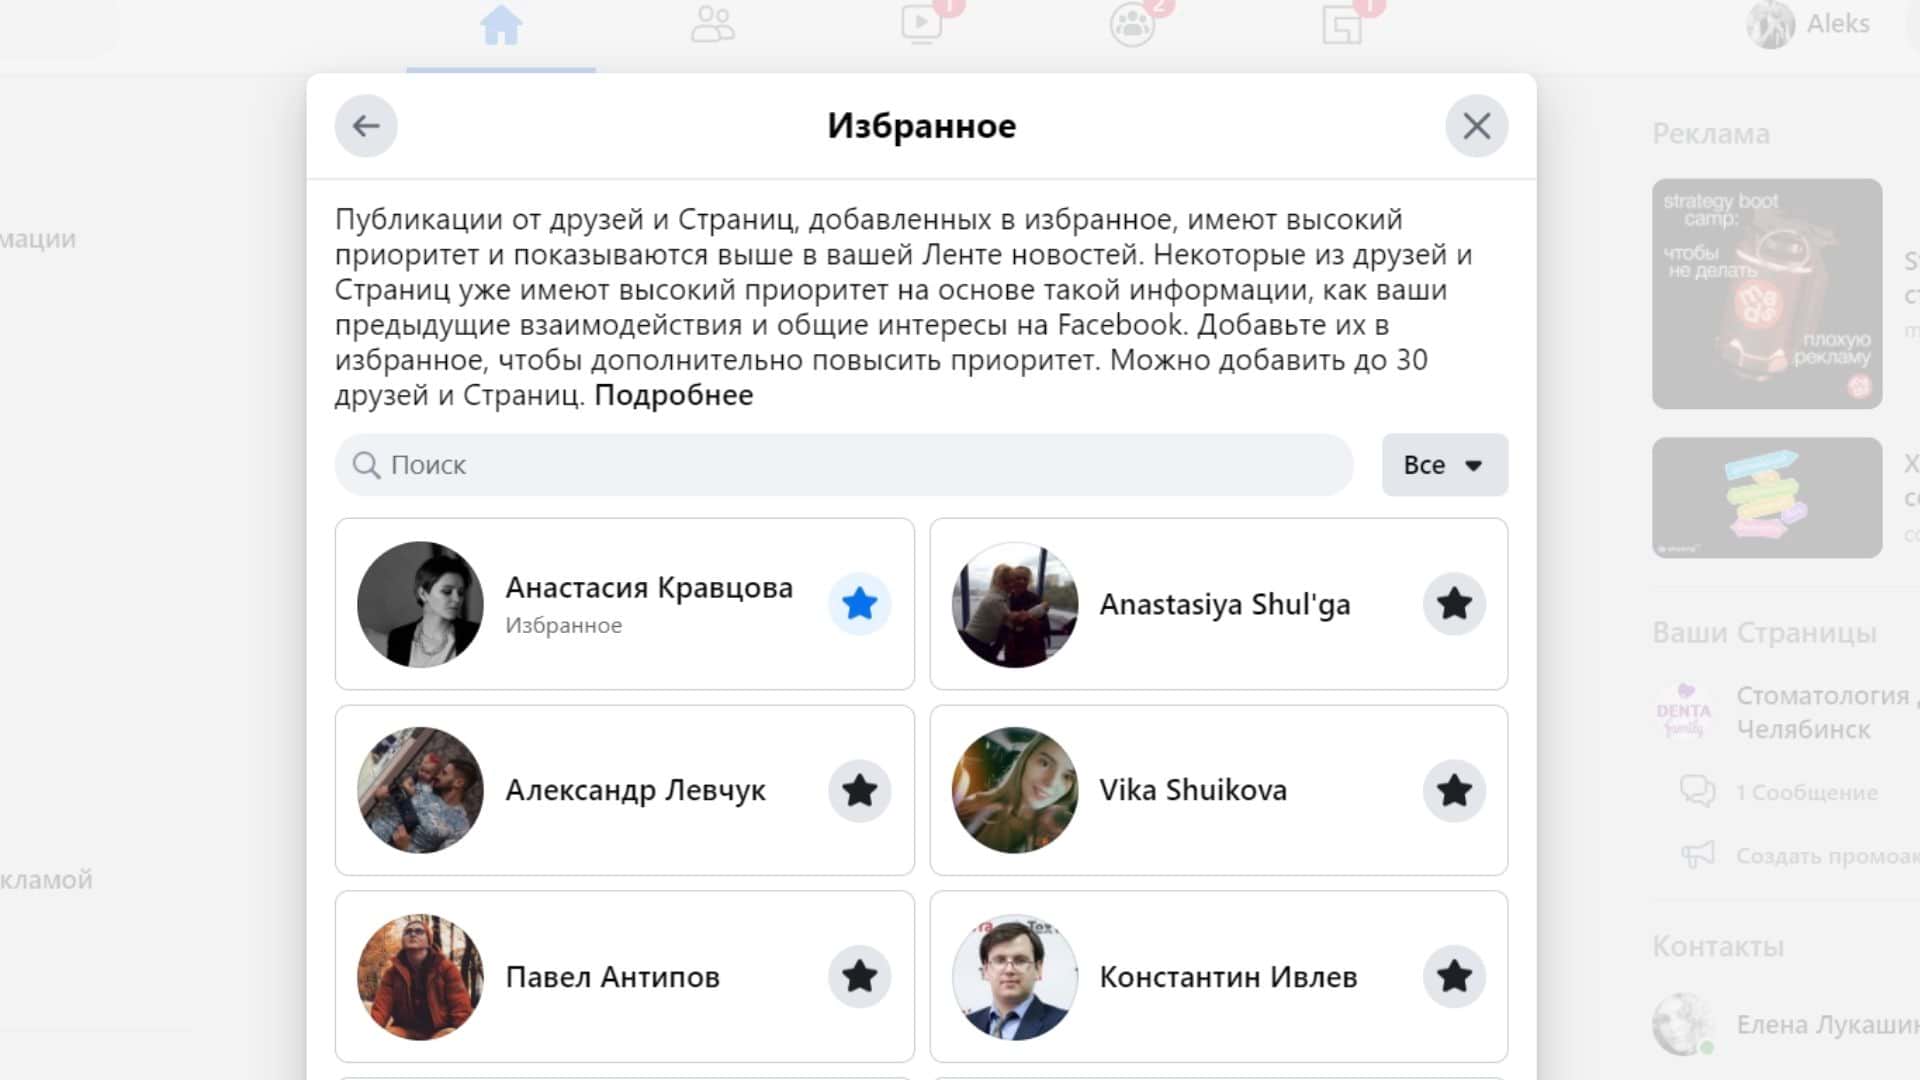 Sprout social: 89% потребителей будут покупать у бренда, за которым они следят в соцсетях. читайте на cossa.ru